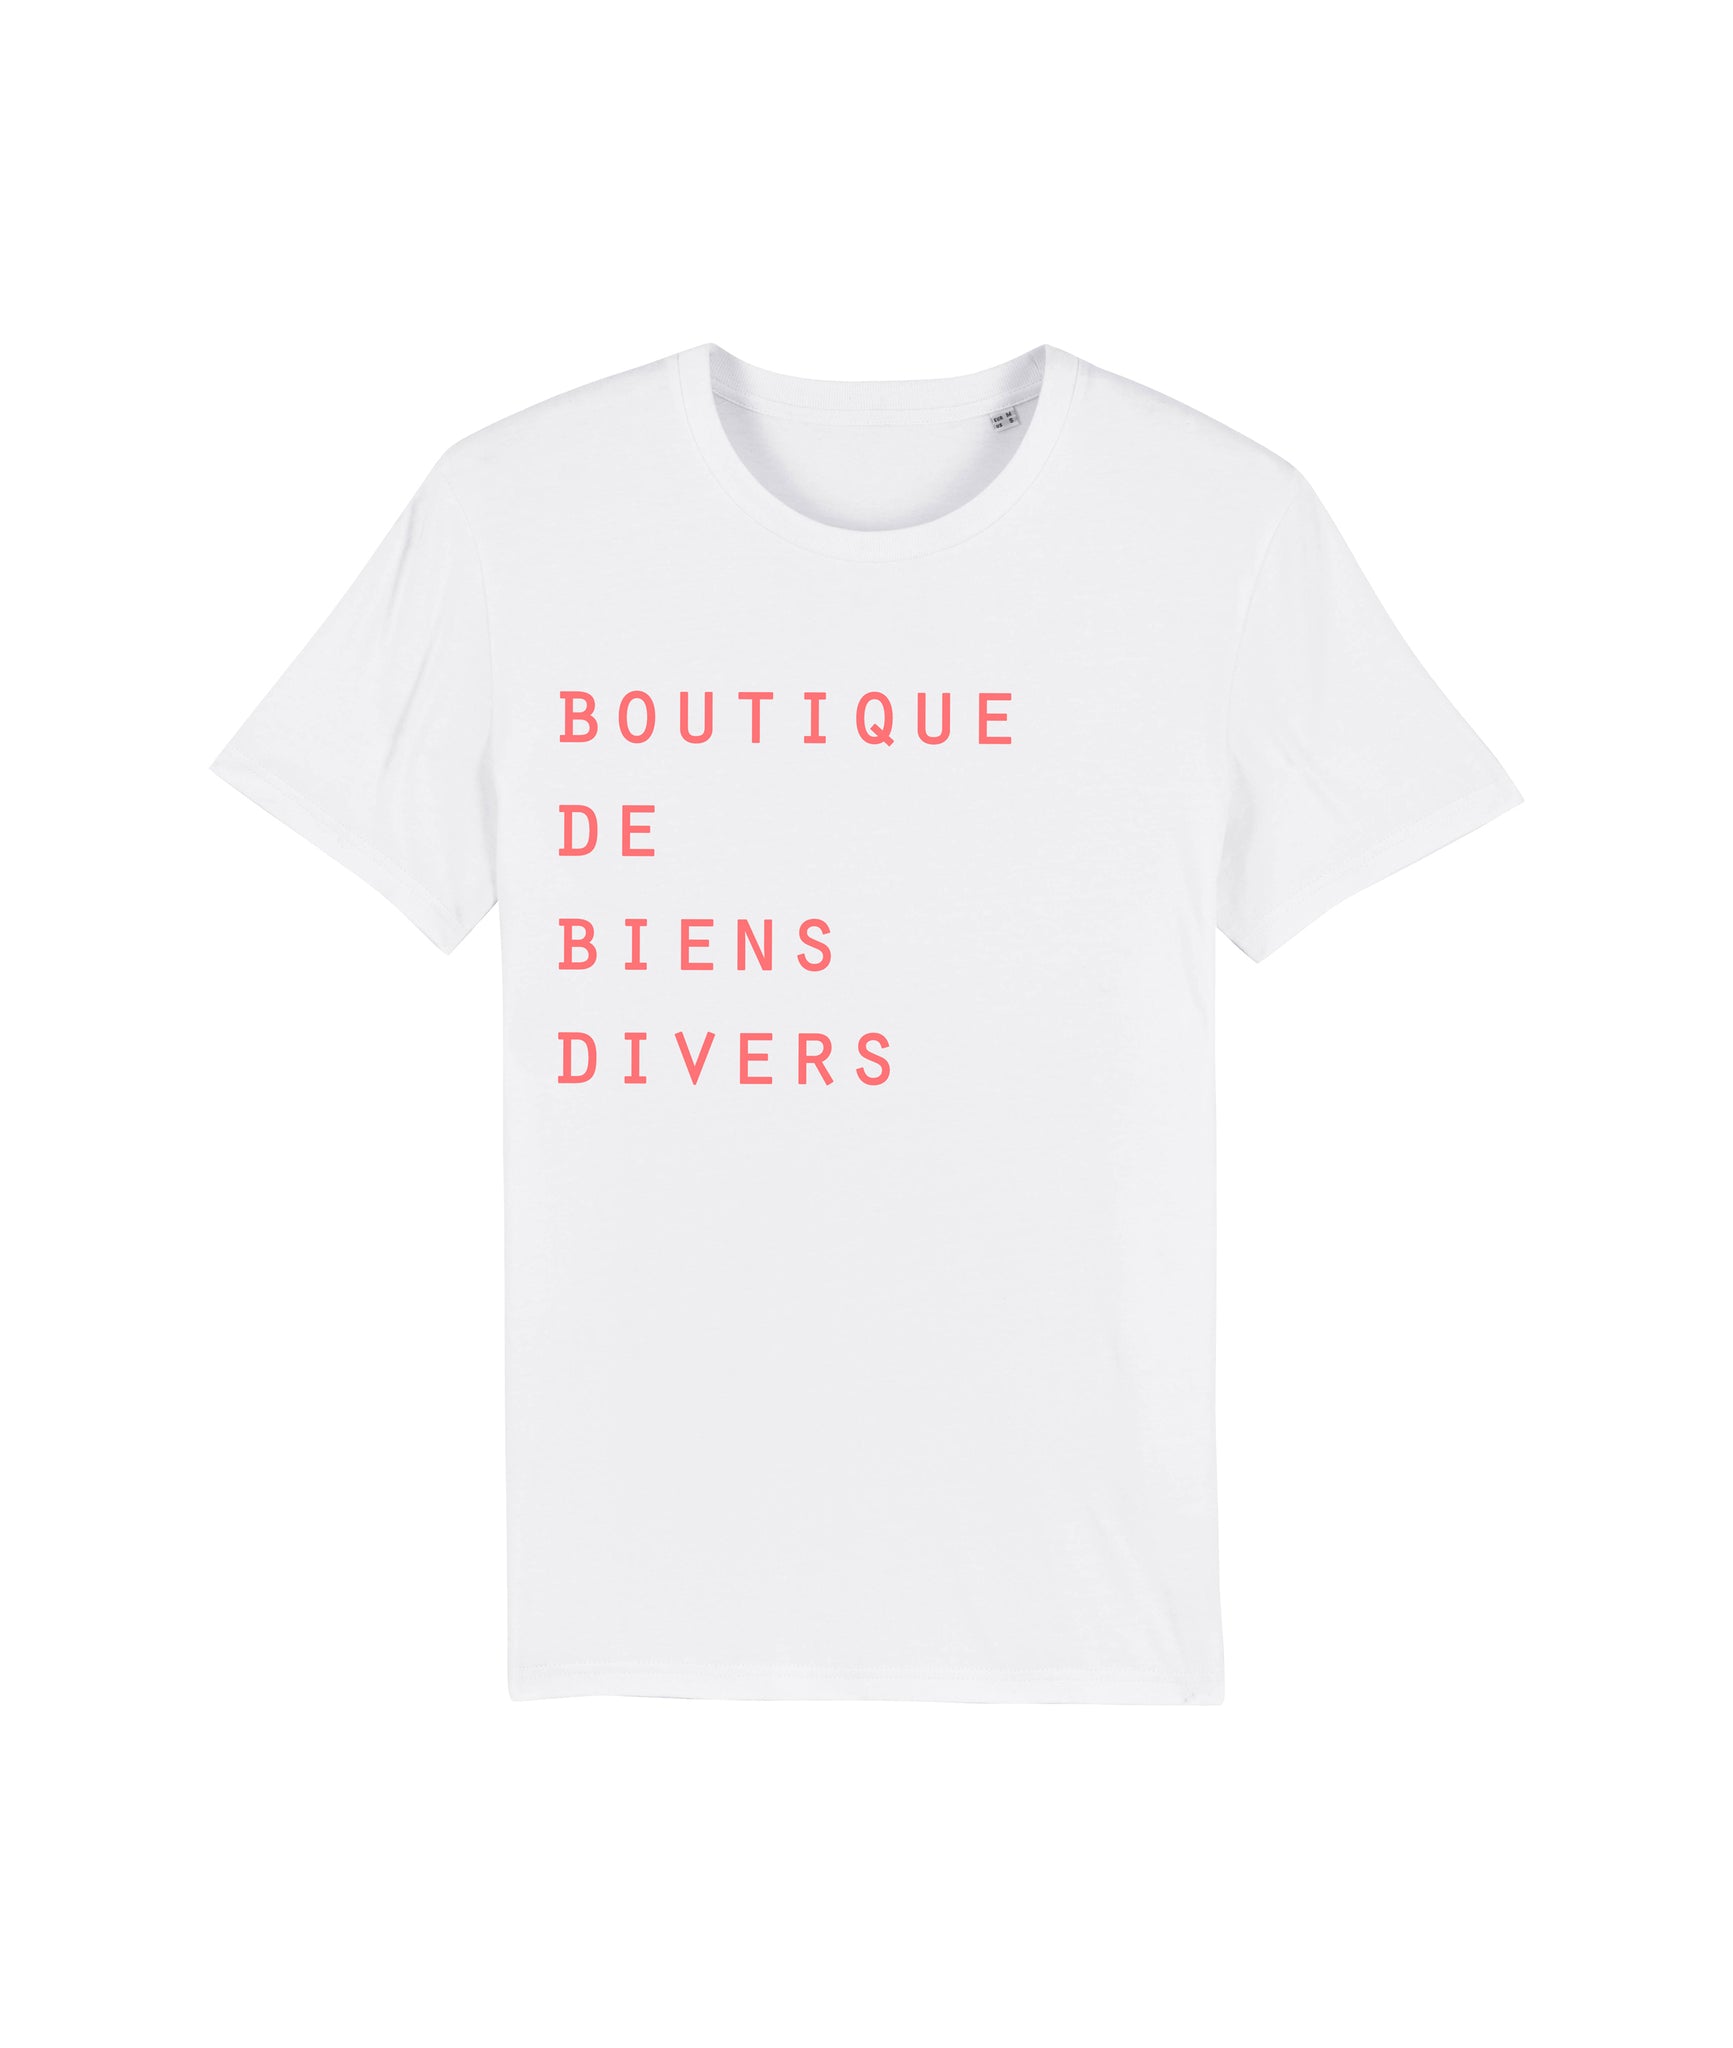 BOUTIQUE DE BIENS DIVERS t-shirt white neon